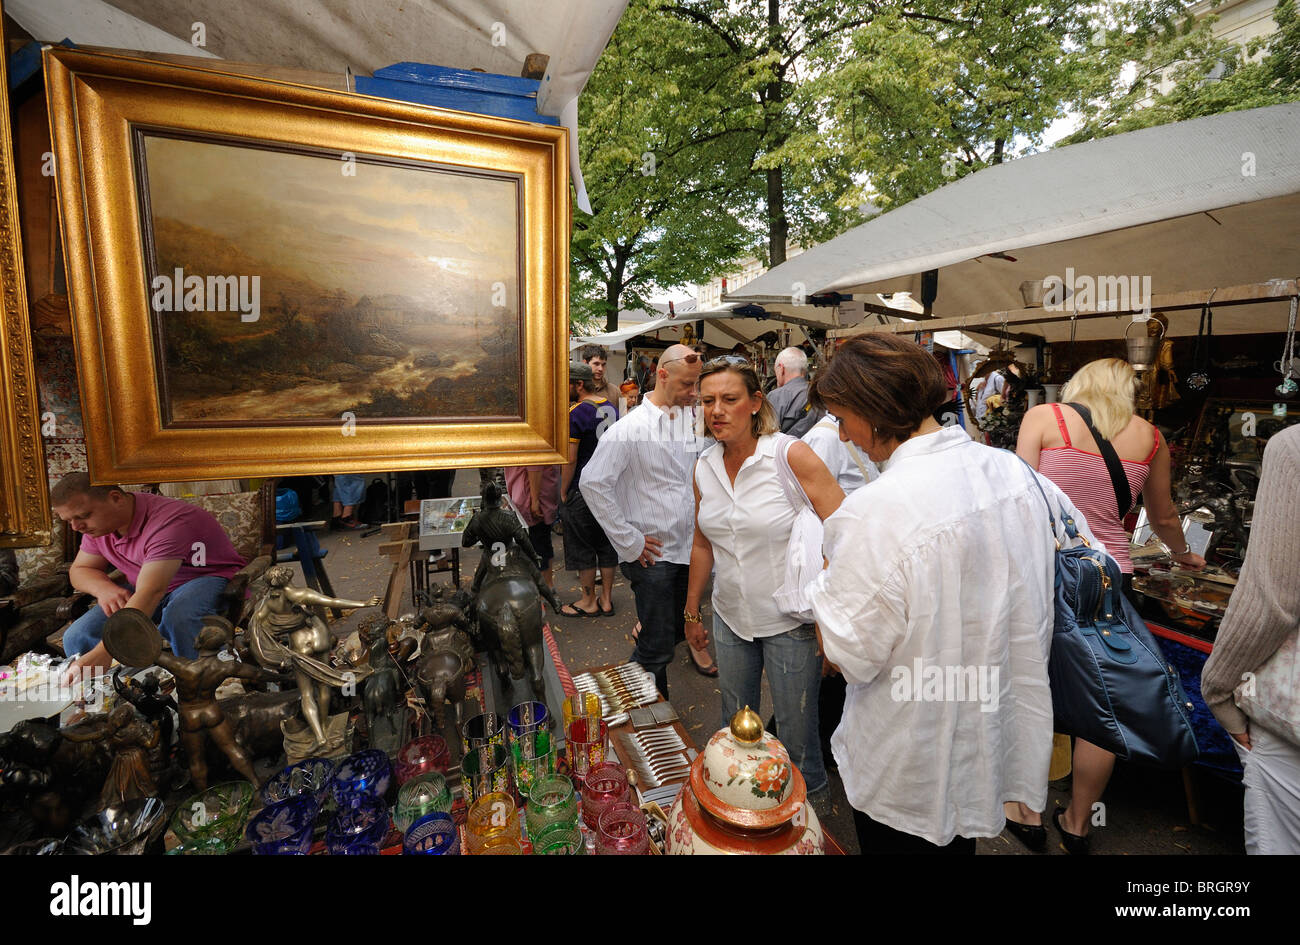 Mercato delle pulci, Strasse des 17. Juni, 17 giugno Street, famosa e il mercato delle pulci tradizionale, Charlottenburg di Berlino, Germania, Europa Foto Stock